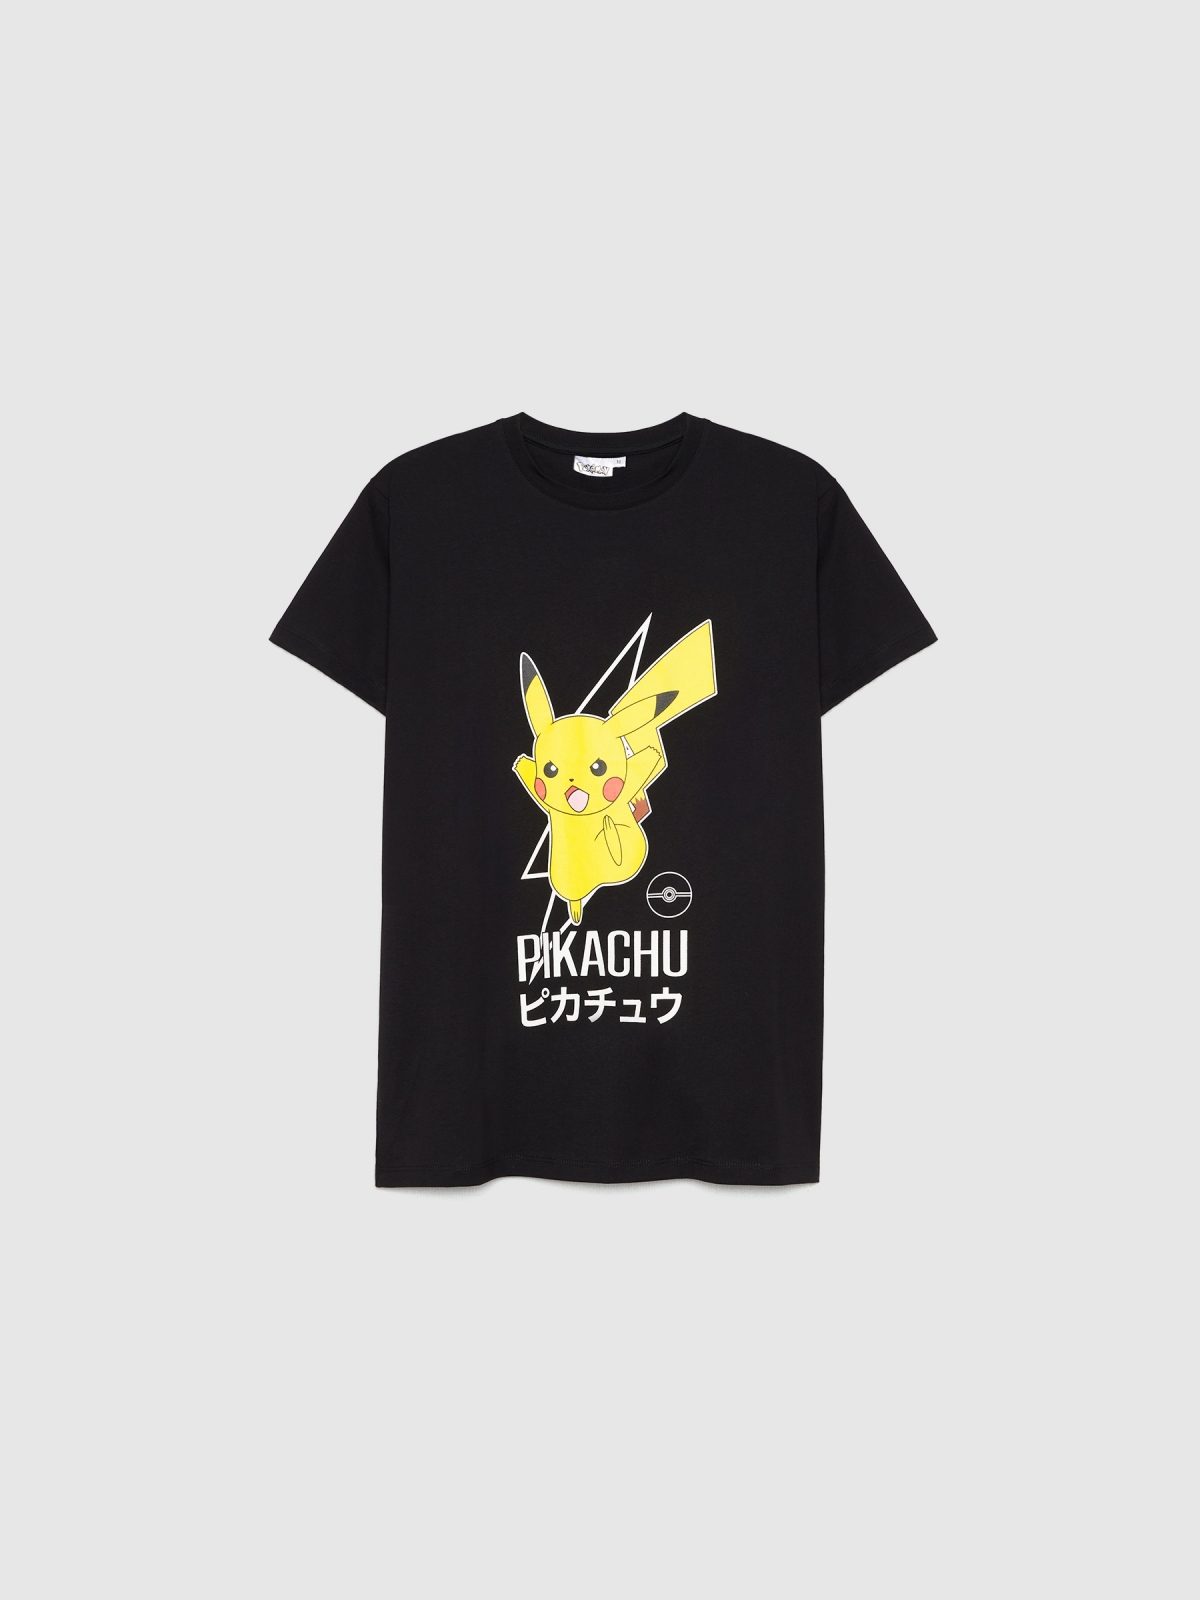  Camiseta Pikachu negro